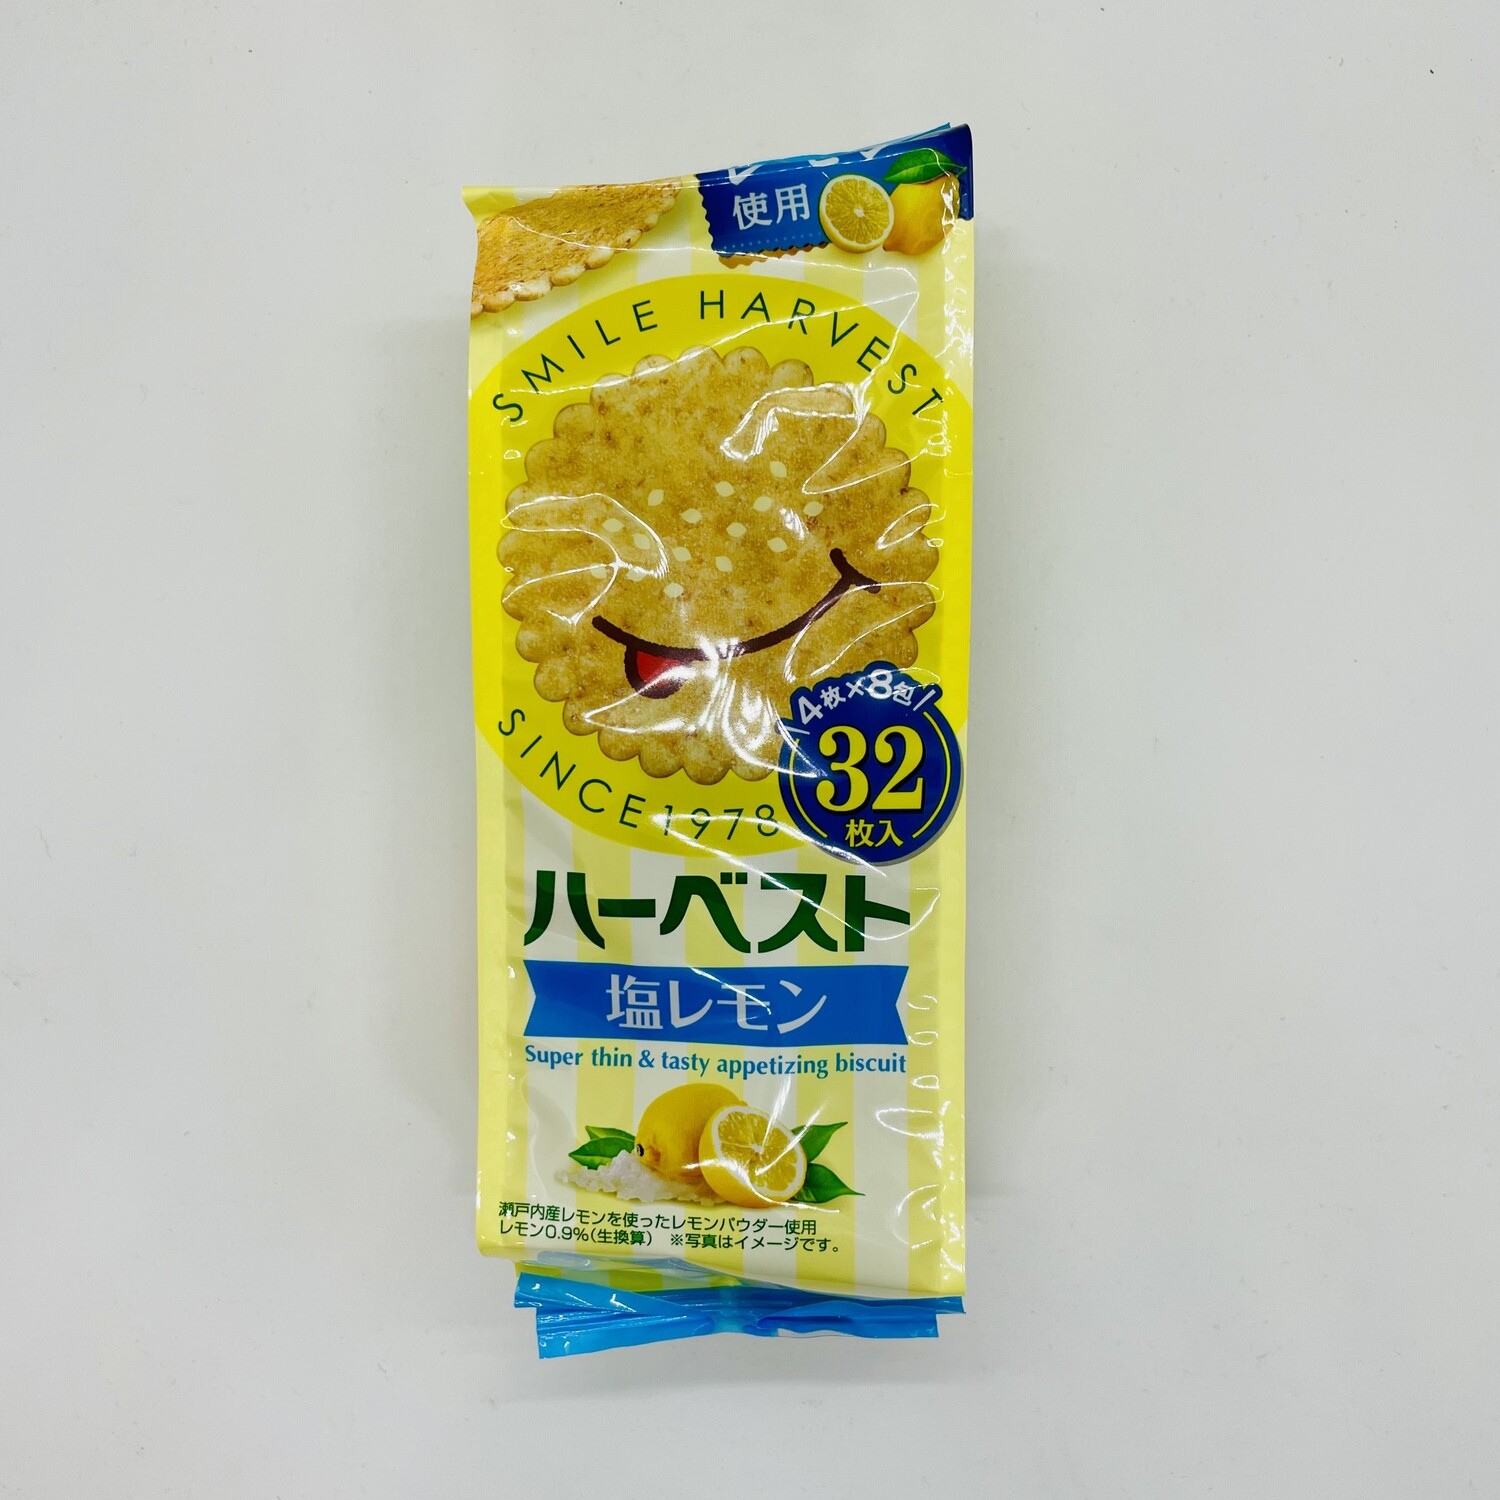 Harvest Shio Lemon